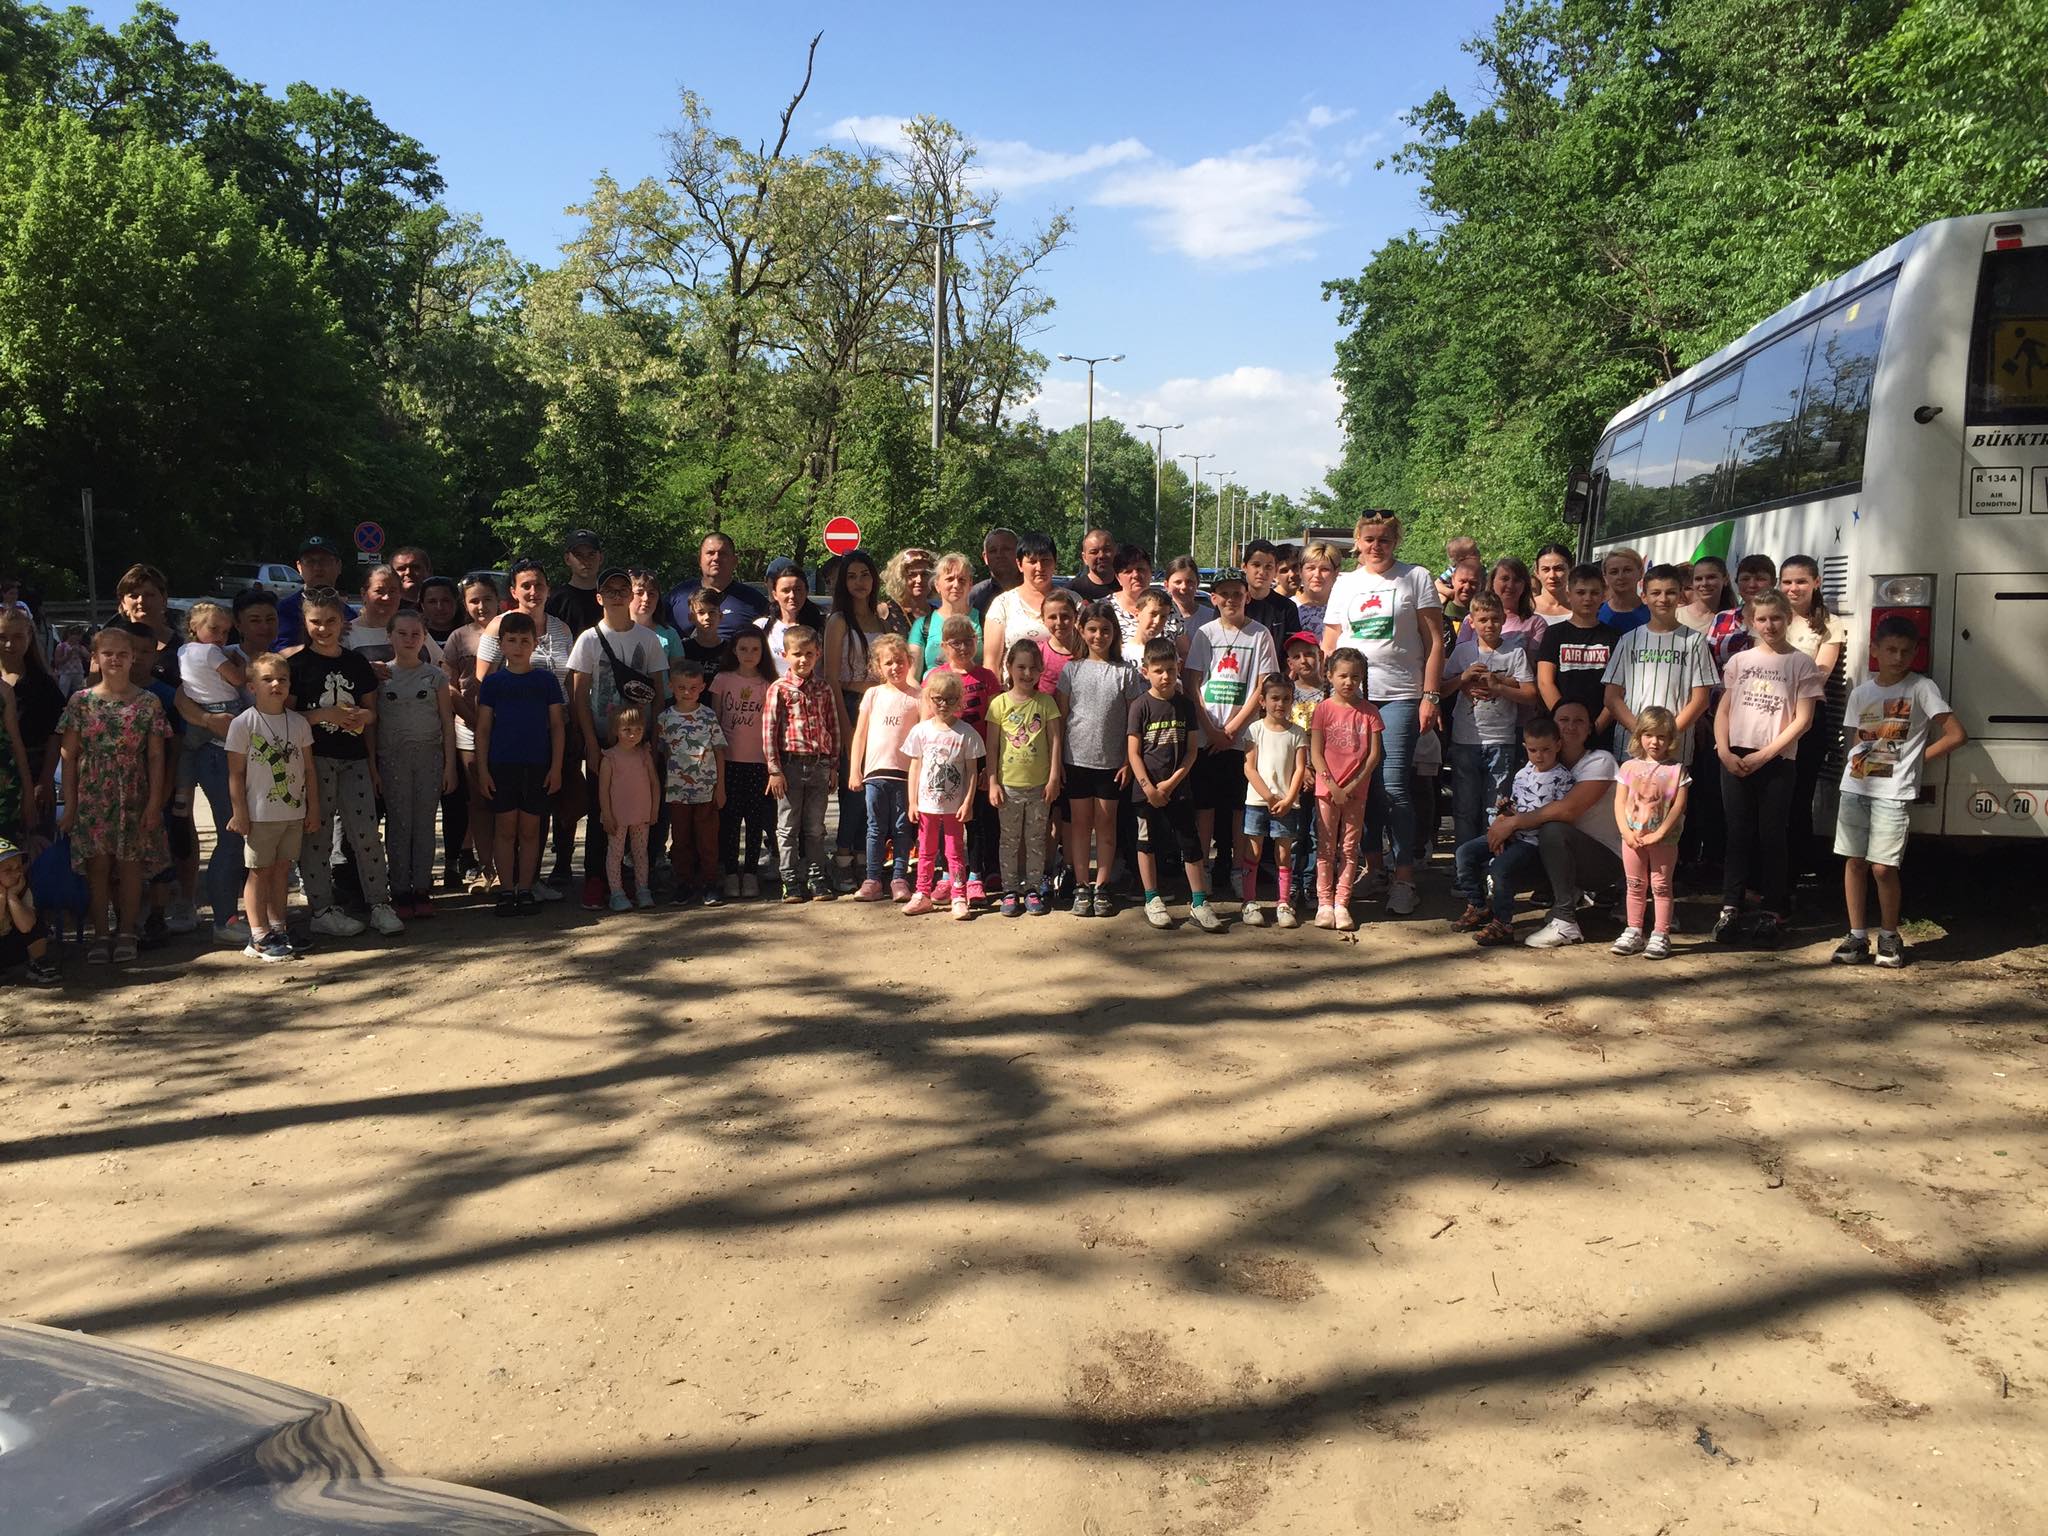 Спілка закарпатських угорських багатодітних сімей організувала для своїх членів екскурсію в зоопарк міста Ніредьгаза, один із найбільших зоопарків Угорщини.

